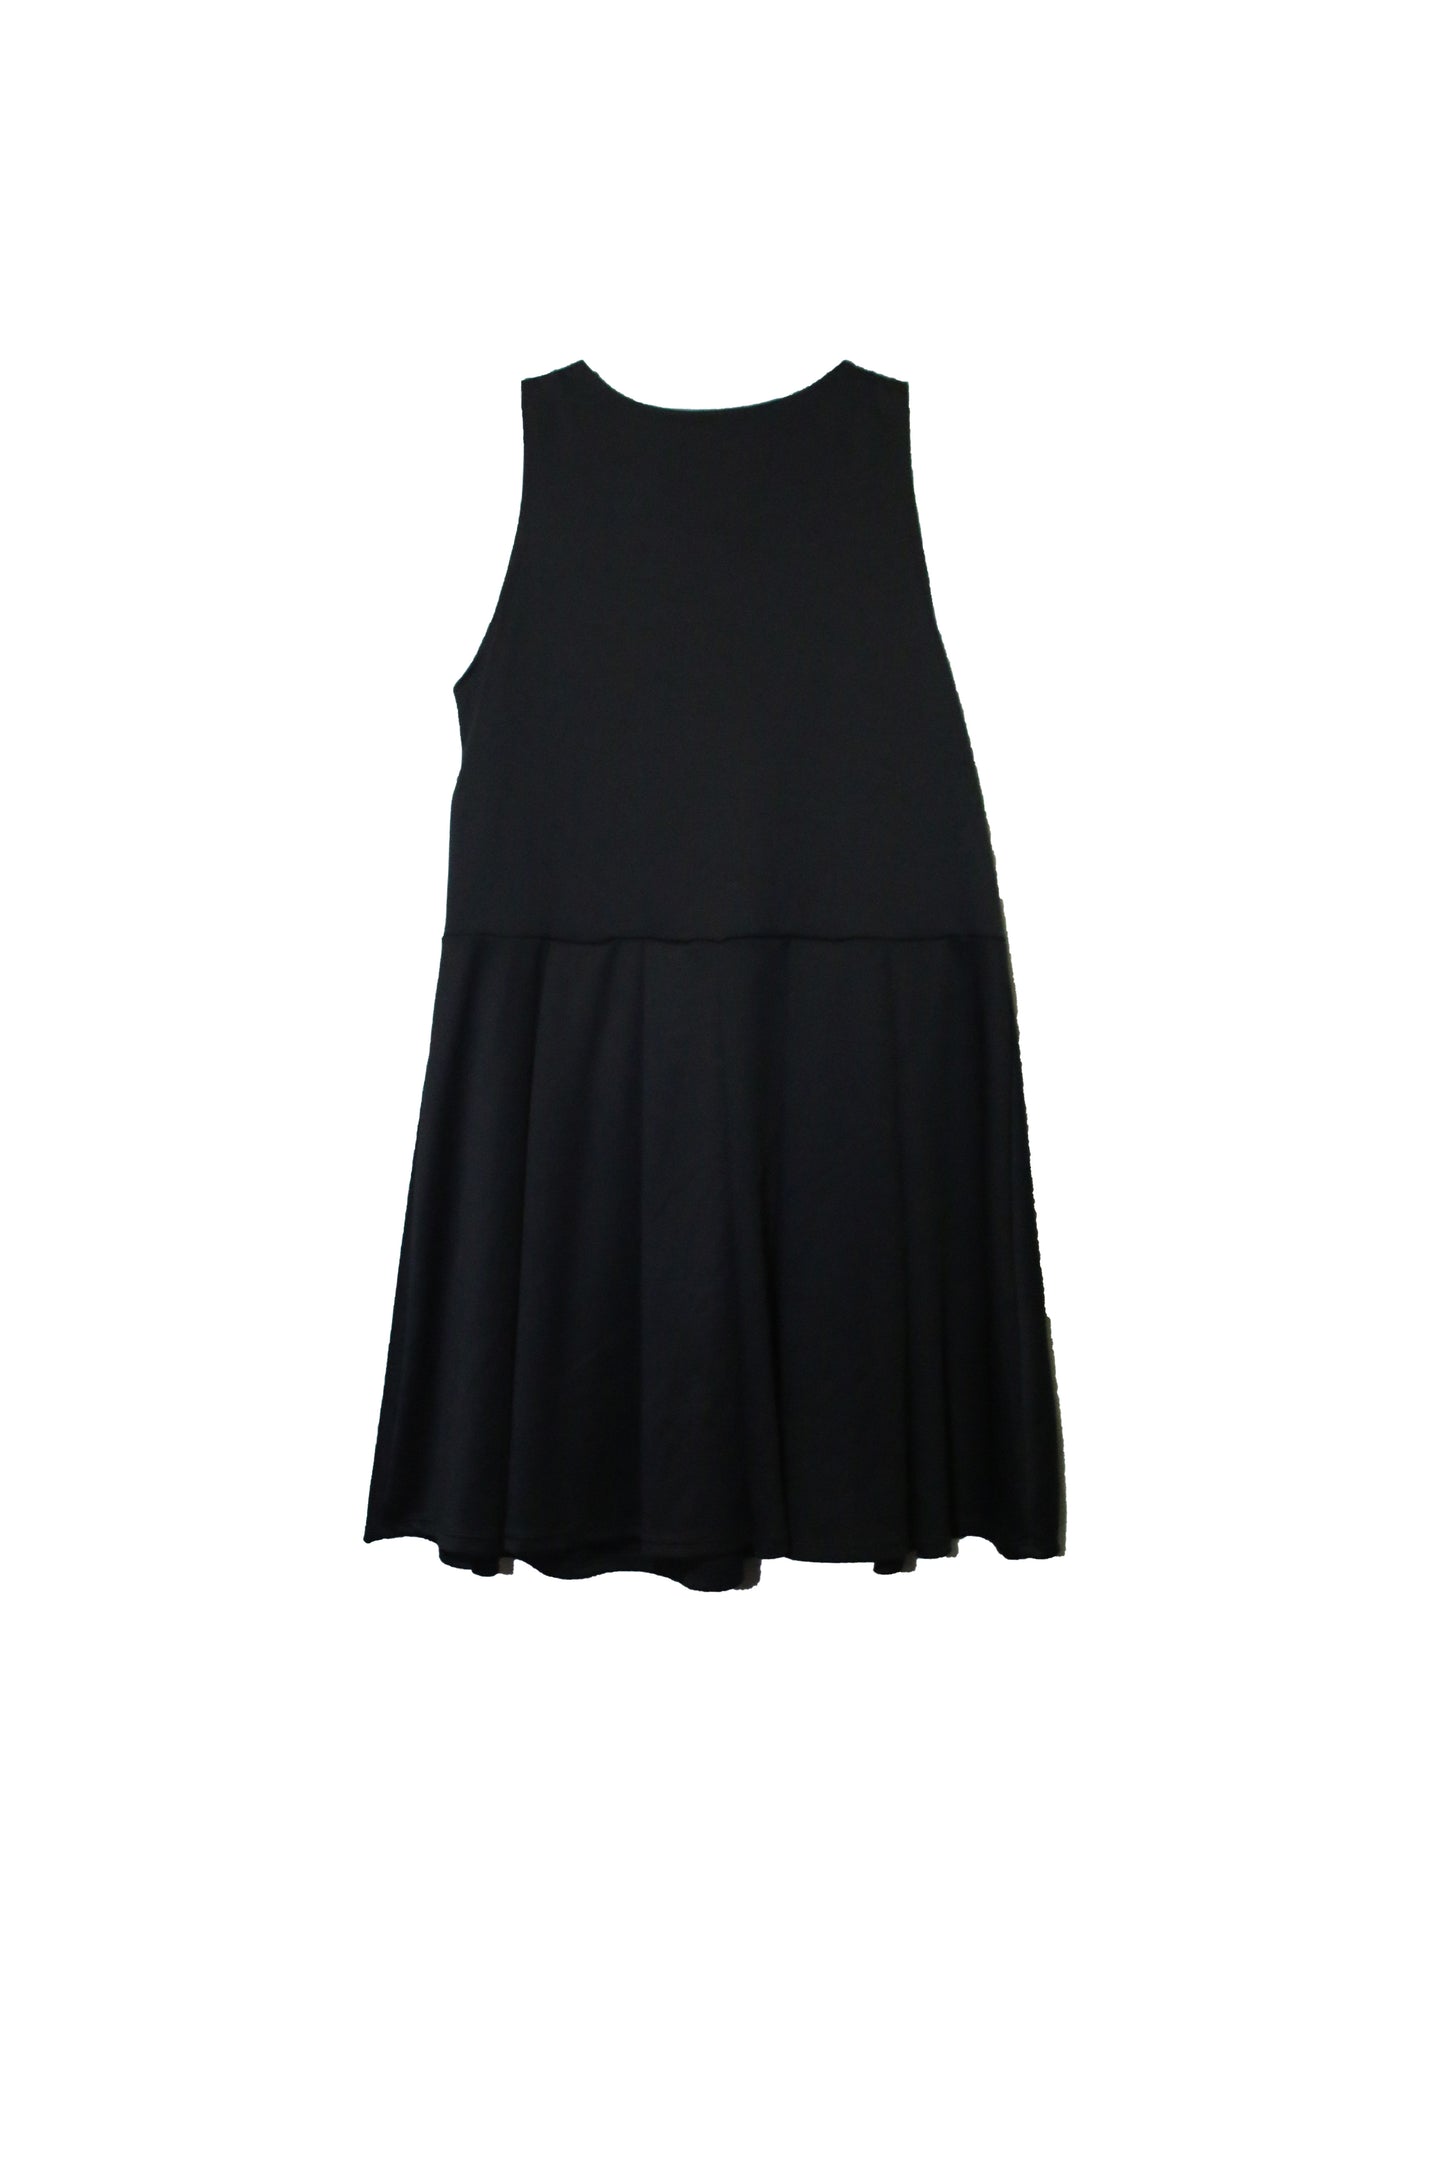 Quum Plus Size Lace Up Black Dress